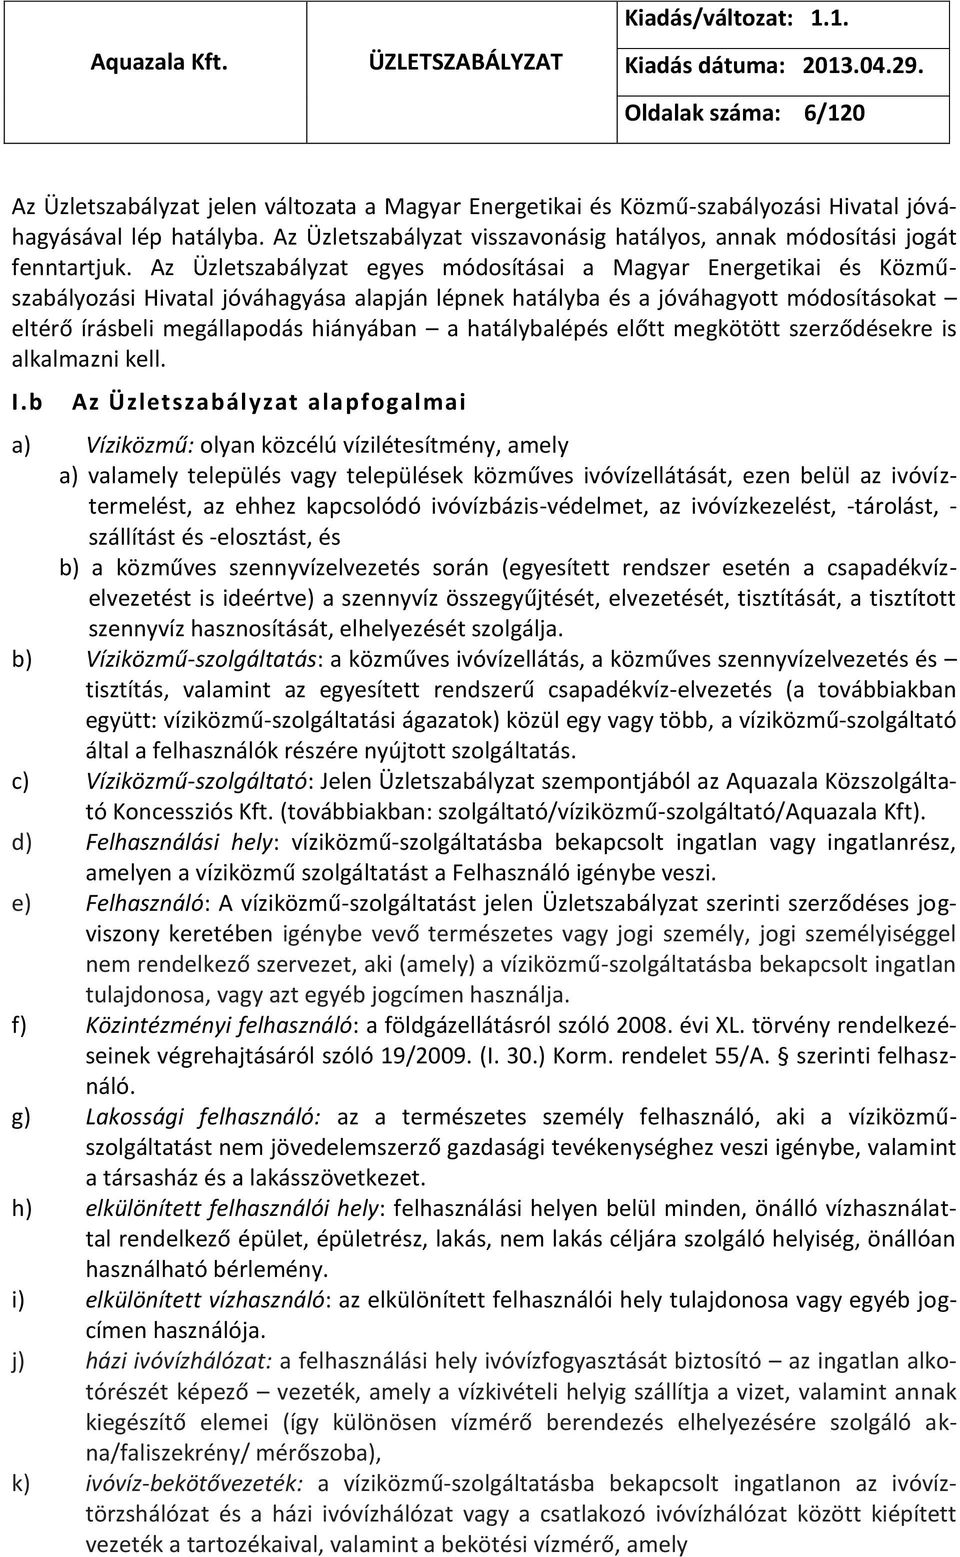 Az Üzletszabályzat egyes módosításai a Magyar Energetikai és Közműszabályozási Hivatal jóváhagyása alapján lépnek hatályba és a jóváhagyott módosításokat eltérő írásbeli megállapodás hiányában a